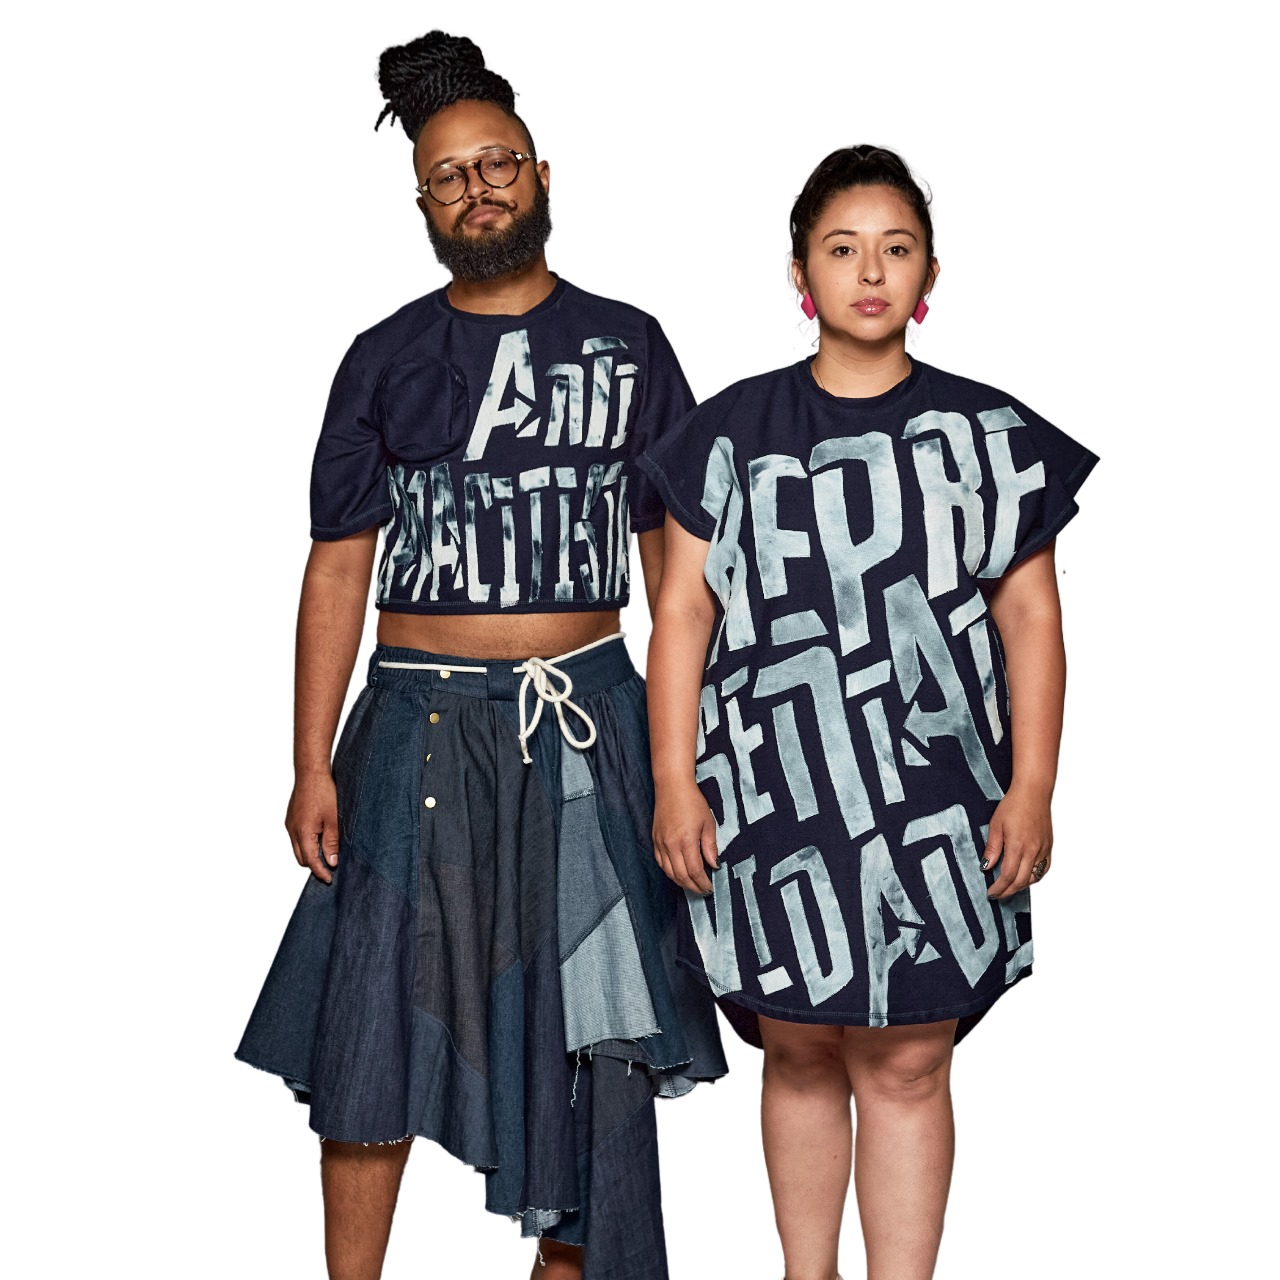 Eduardo e Luane, idealizadores do prêmio Bocaiúva de Moda Inclusiva, uma iniciativa pioneira em moda inclusiva na região Centro-Oeste.